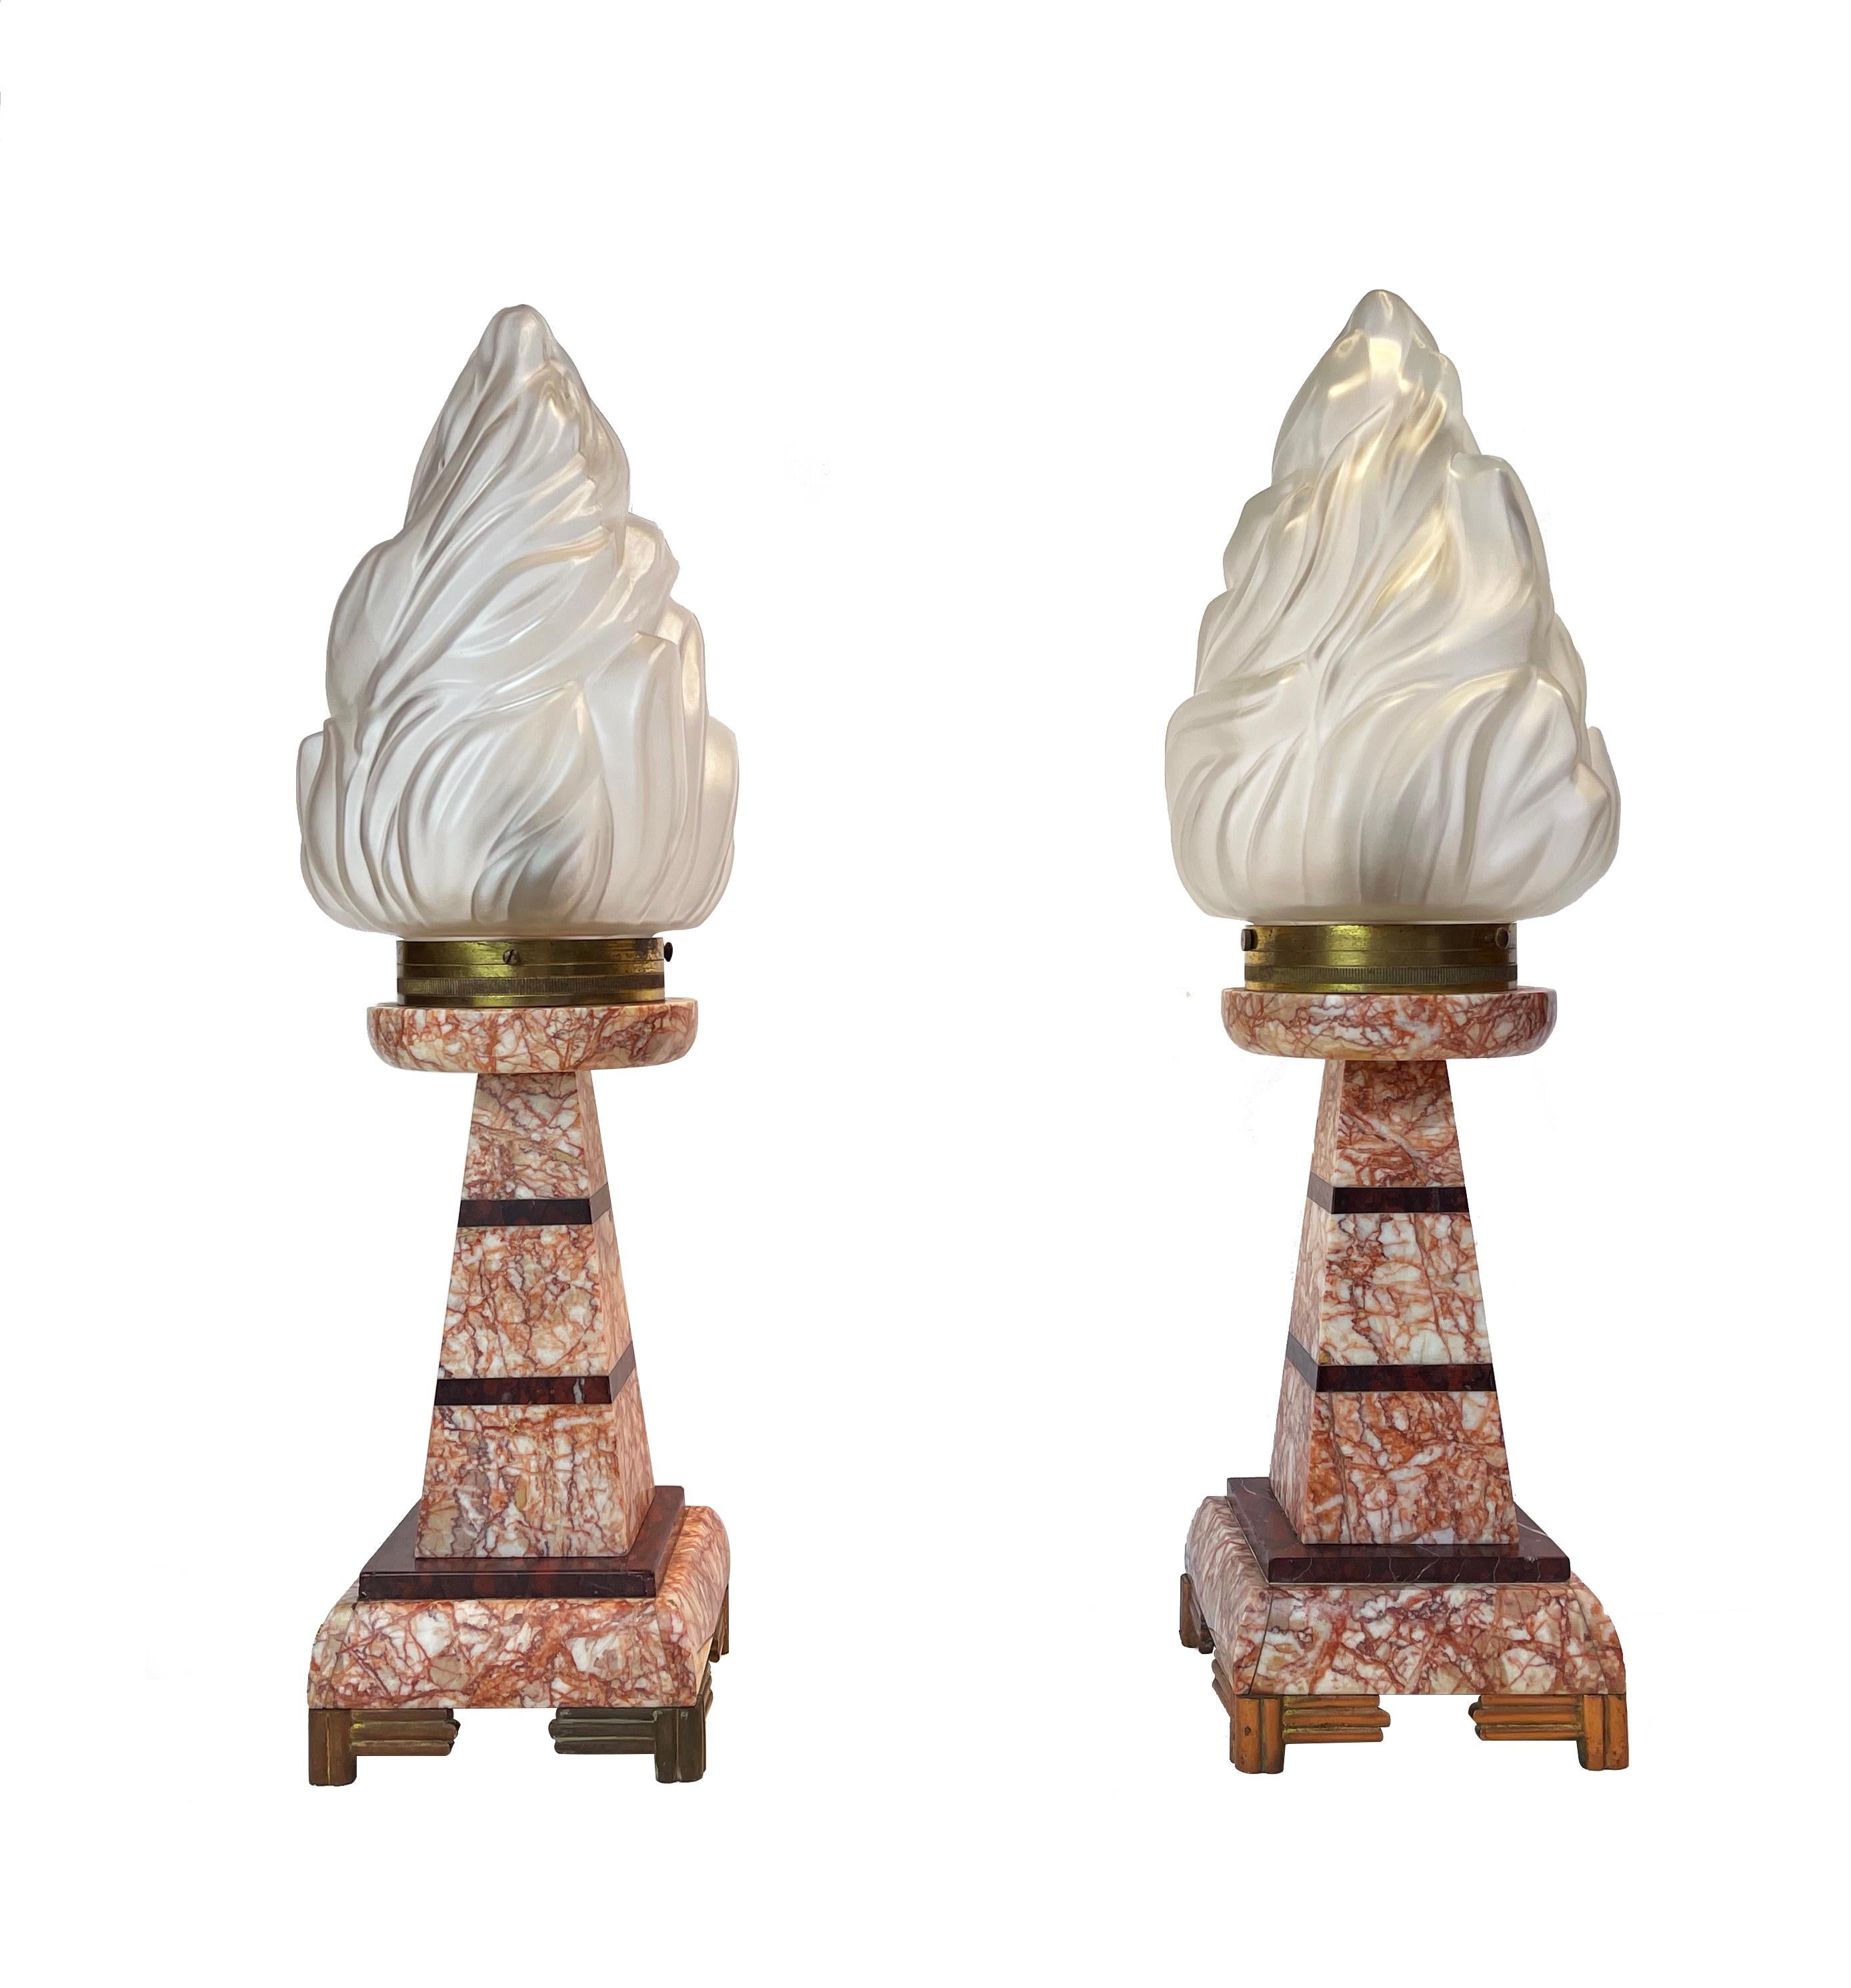 Ensemble expressif et très inhabituel de deux lampes de table Art déco françaises avec un soupçon de style Empire des années 1930 env.
Ce style particulier de lampes torches a été introduit lors de l'Exposition de Paris en 1855.

Les lampes sont en